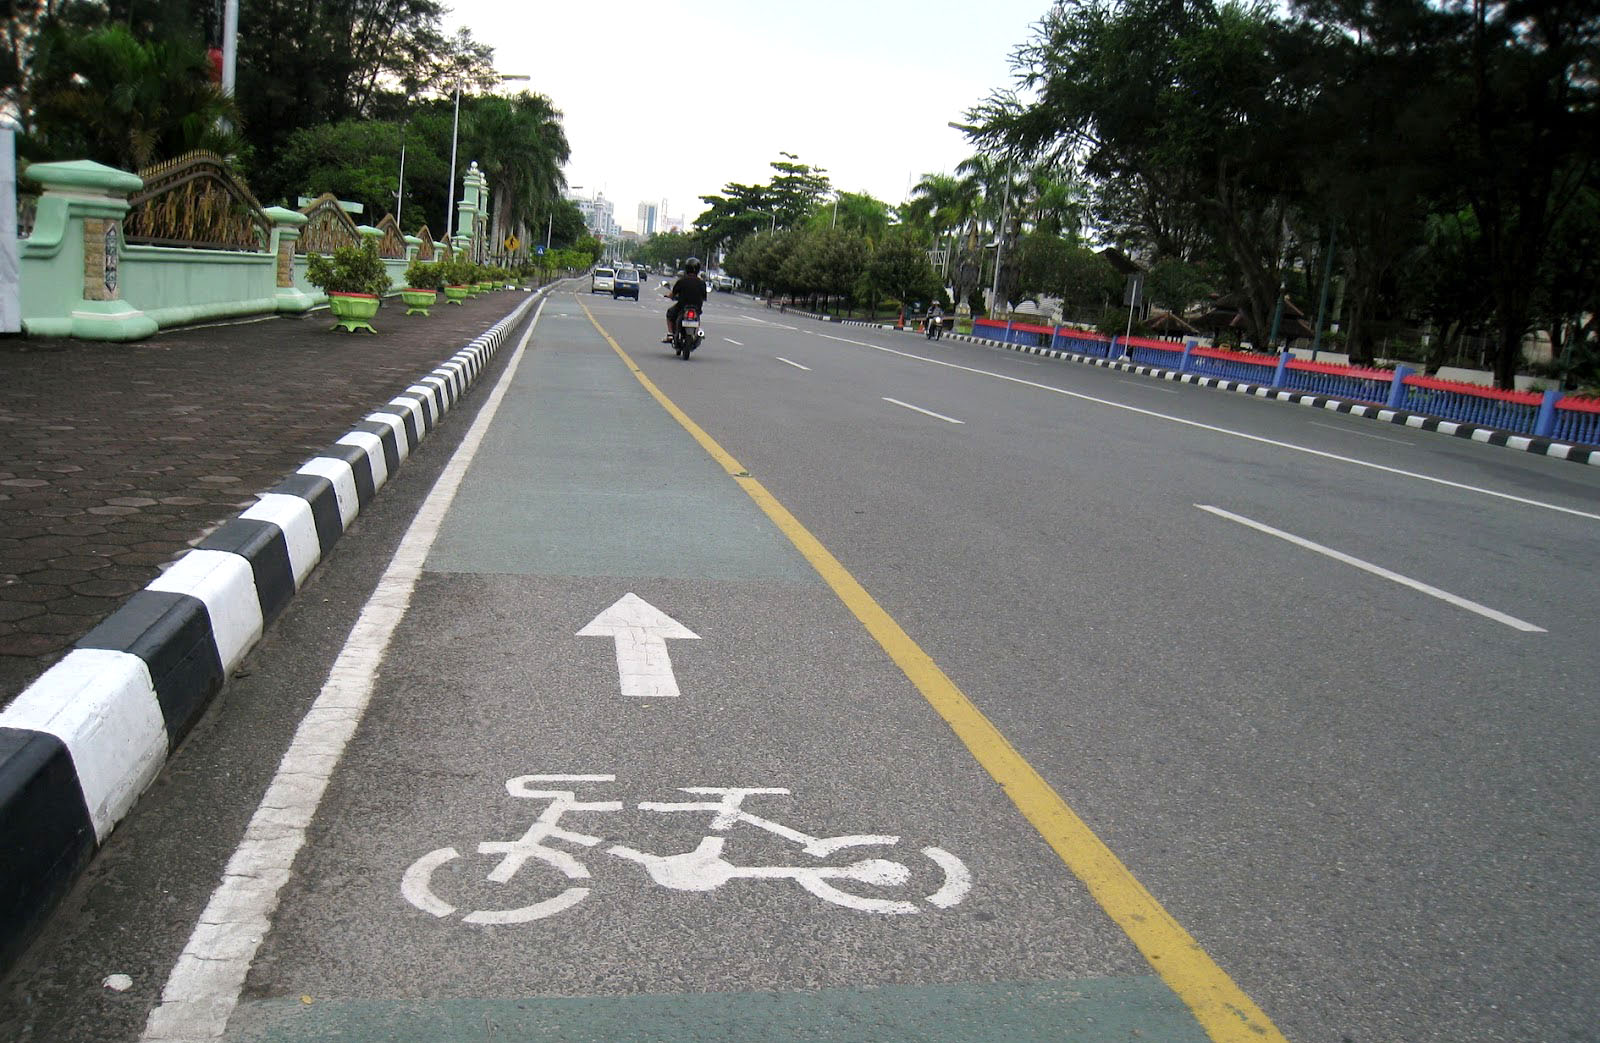 10 Kota ini paling ramah untuk pengguna sepeda, kotamu masuk nggak?